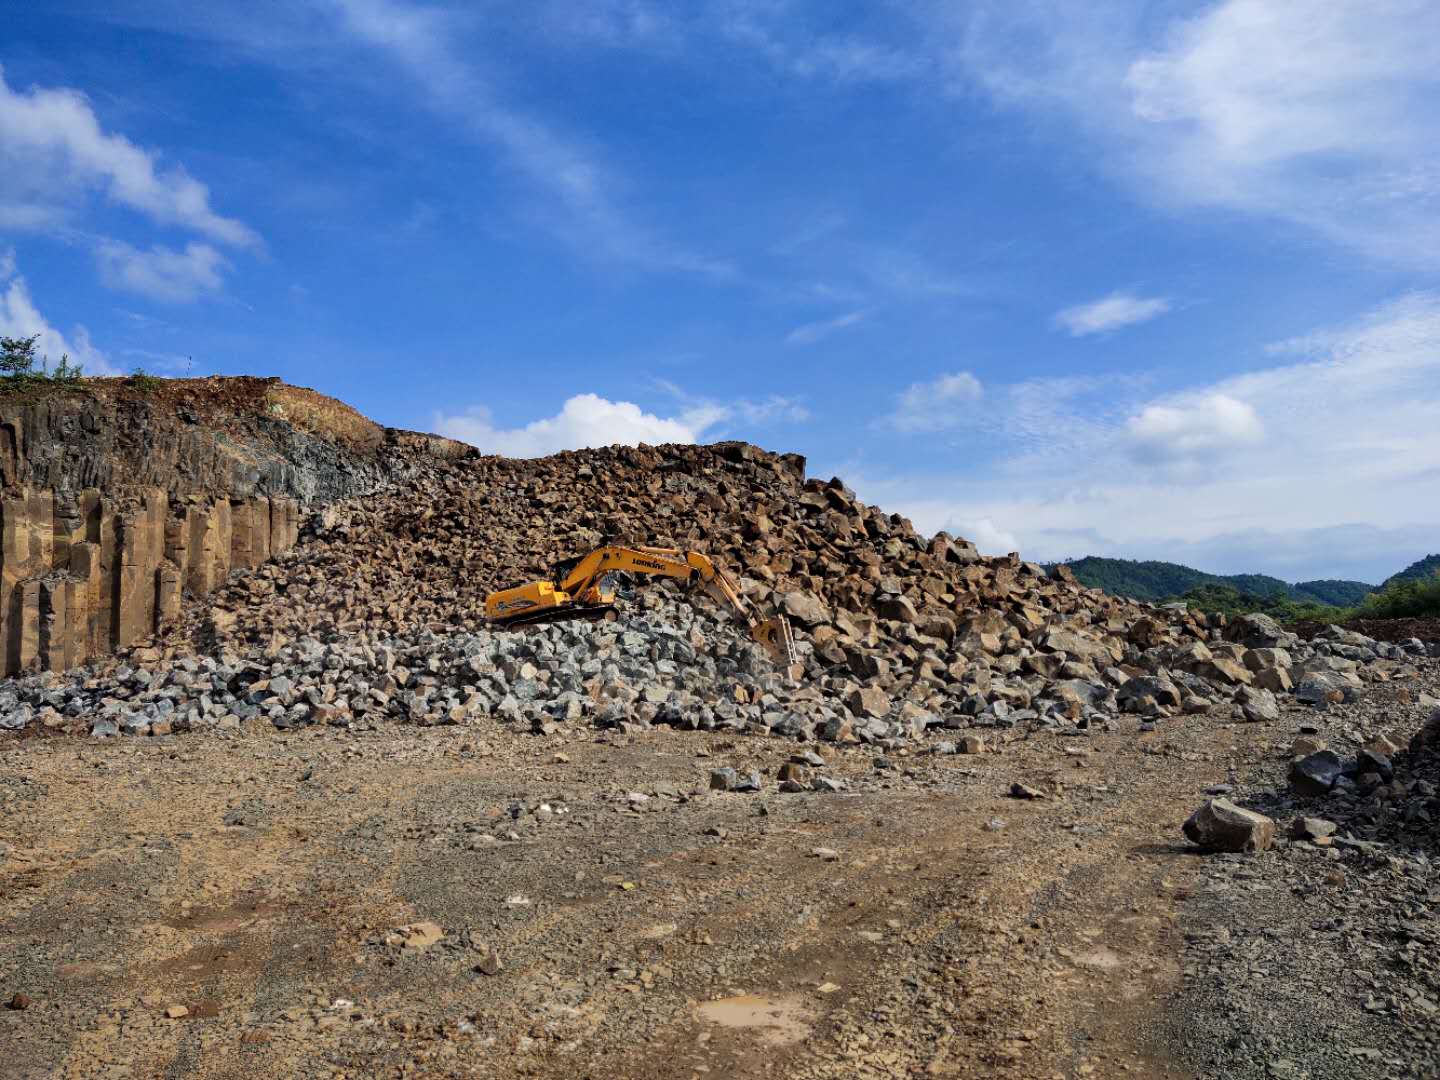 嵊州市下王镇溪后村优优坪建筑用石料（玄武岩）矿开采工程